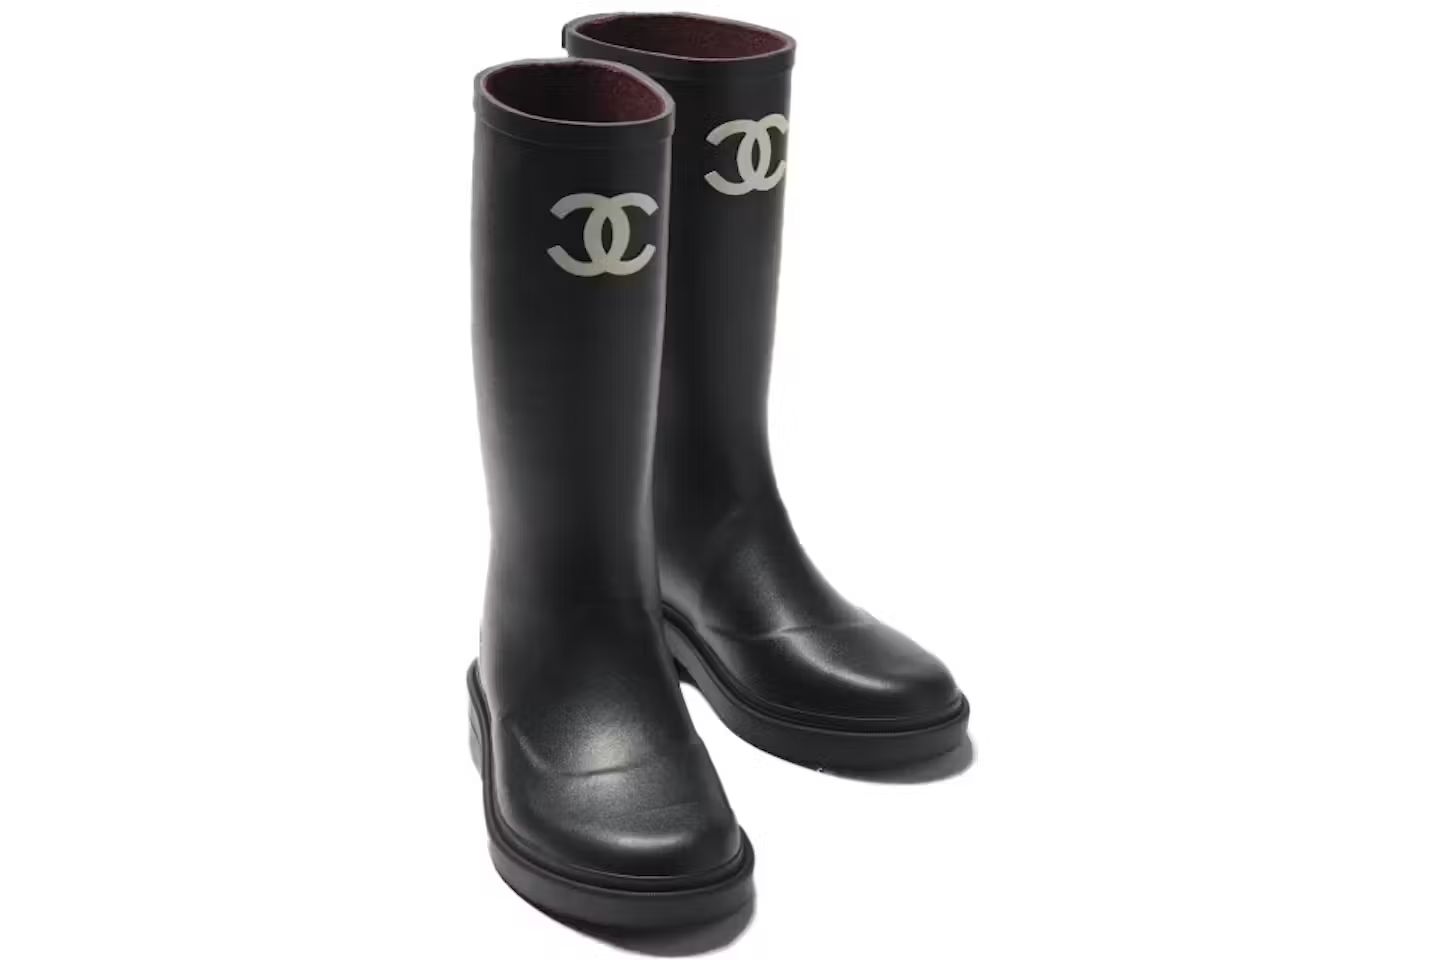 Chanel Rubber Rain Boots Black | StockX